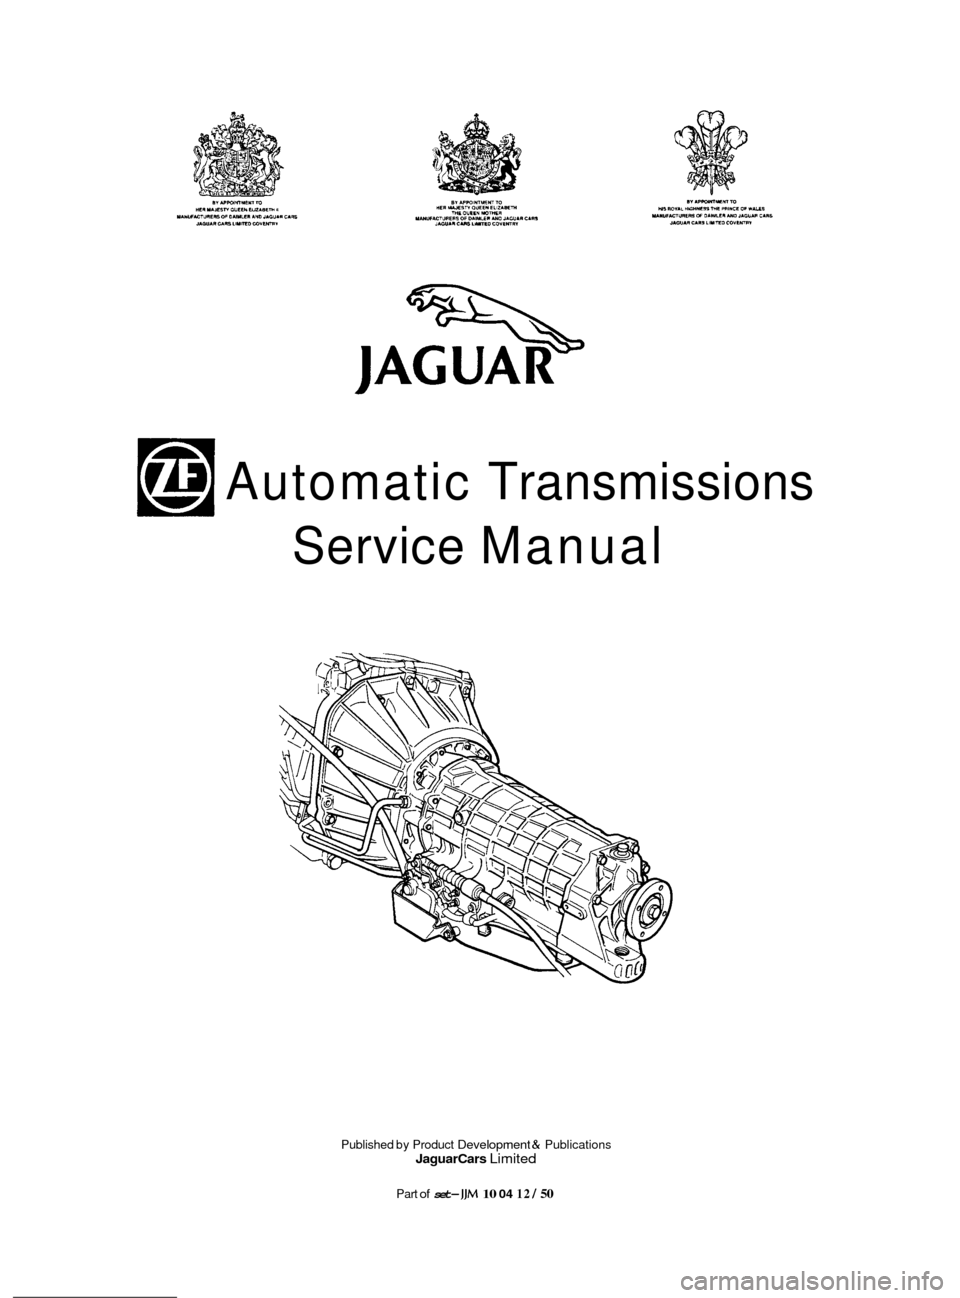 JAGUAR XJ 1994 2.G ZF Automatic Transmission Manual Automatic Transmissions 
Service  Manual 
Published  by Product Development & Publications Jaguar Cars Limited 
Part of set- JJM 10 04 12 / 50  